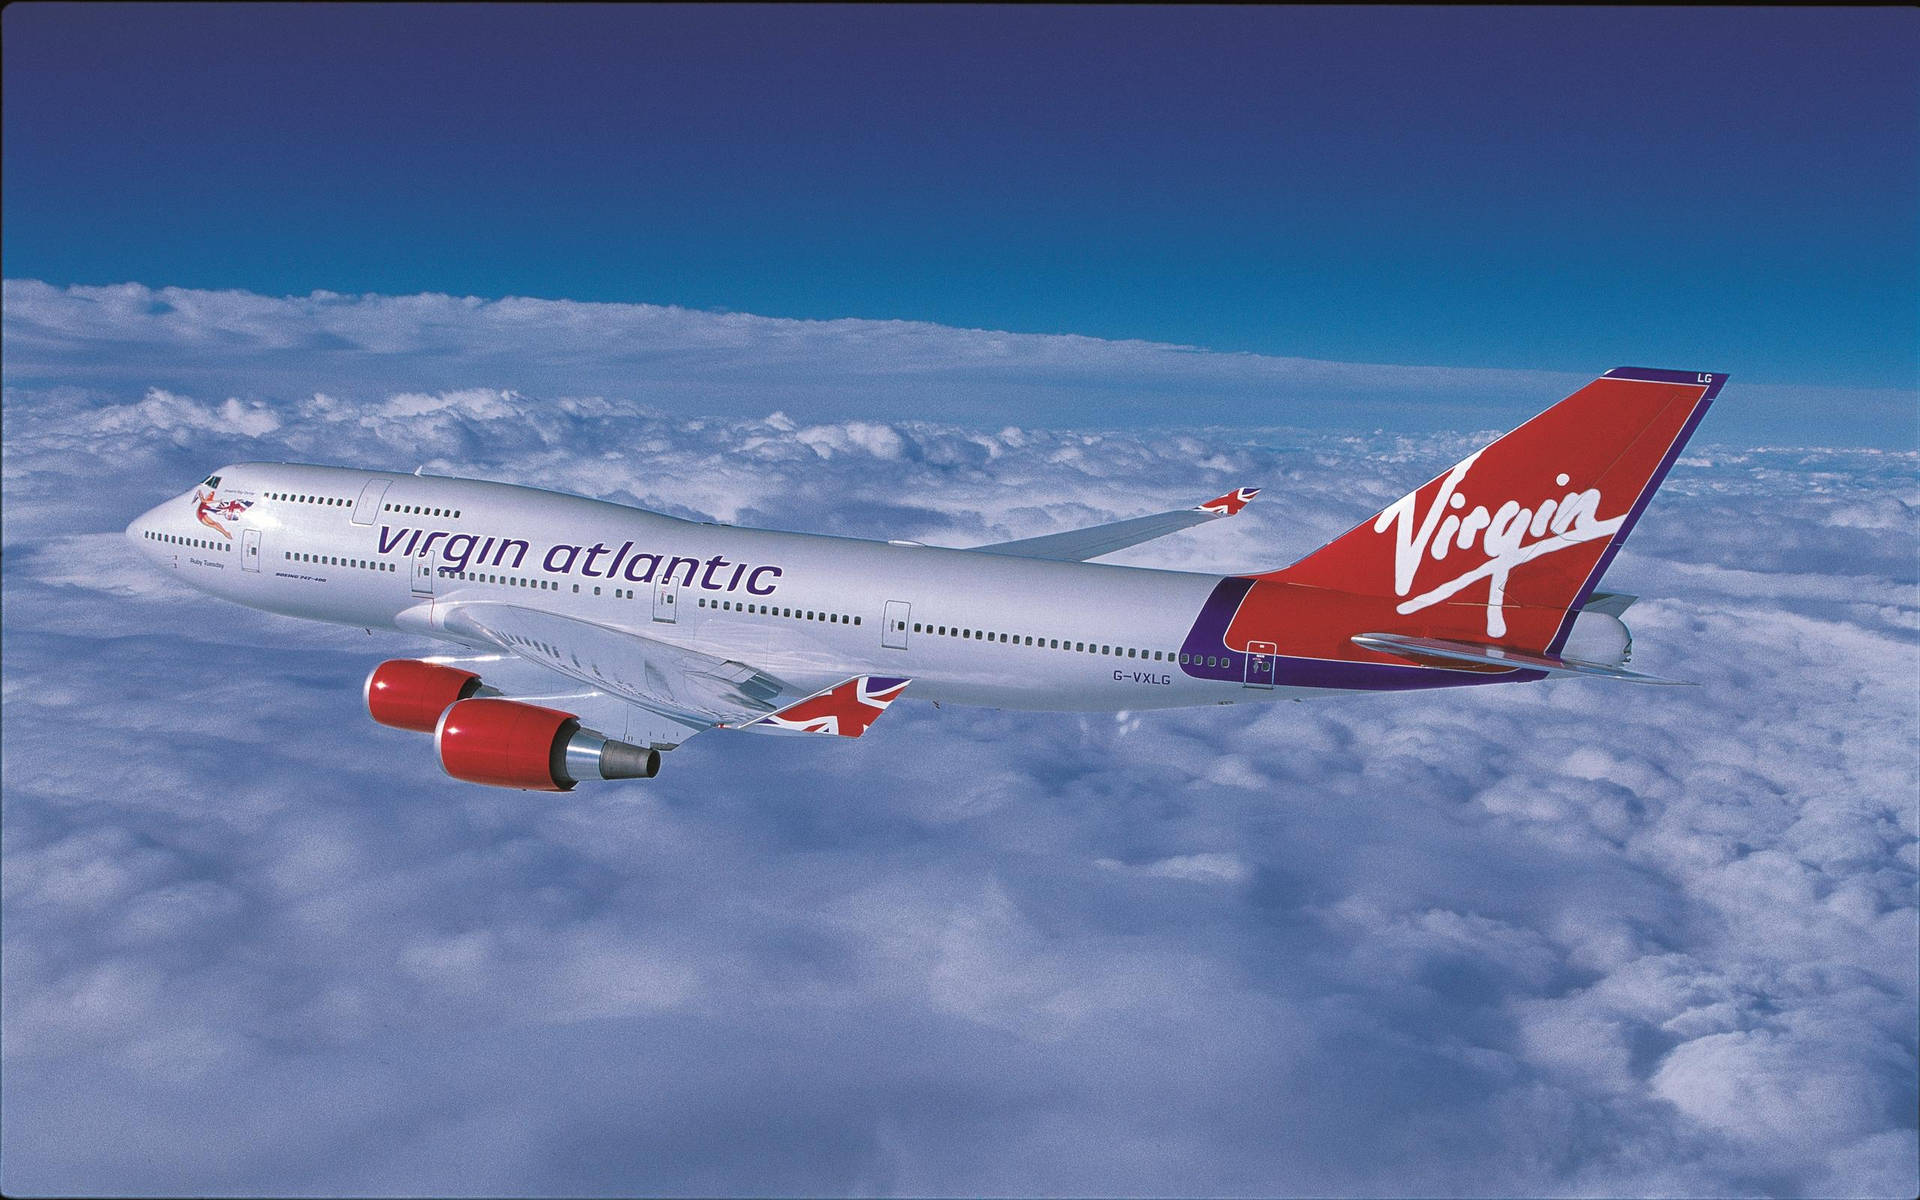 Fliegendesflugzeug Von Virgin Atlantic Wallpaper